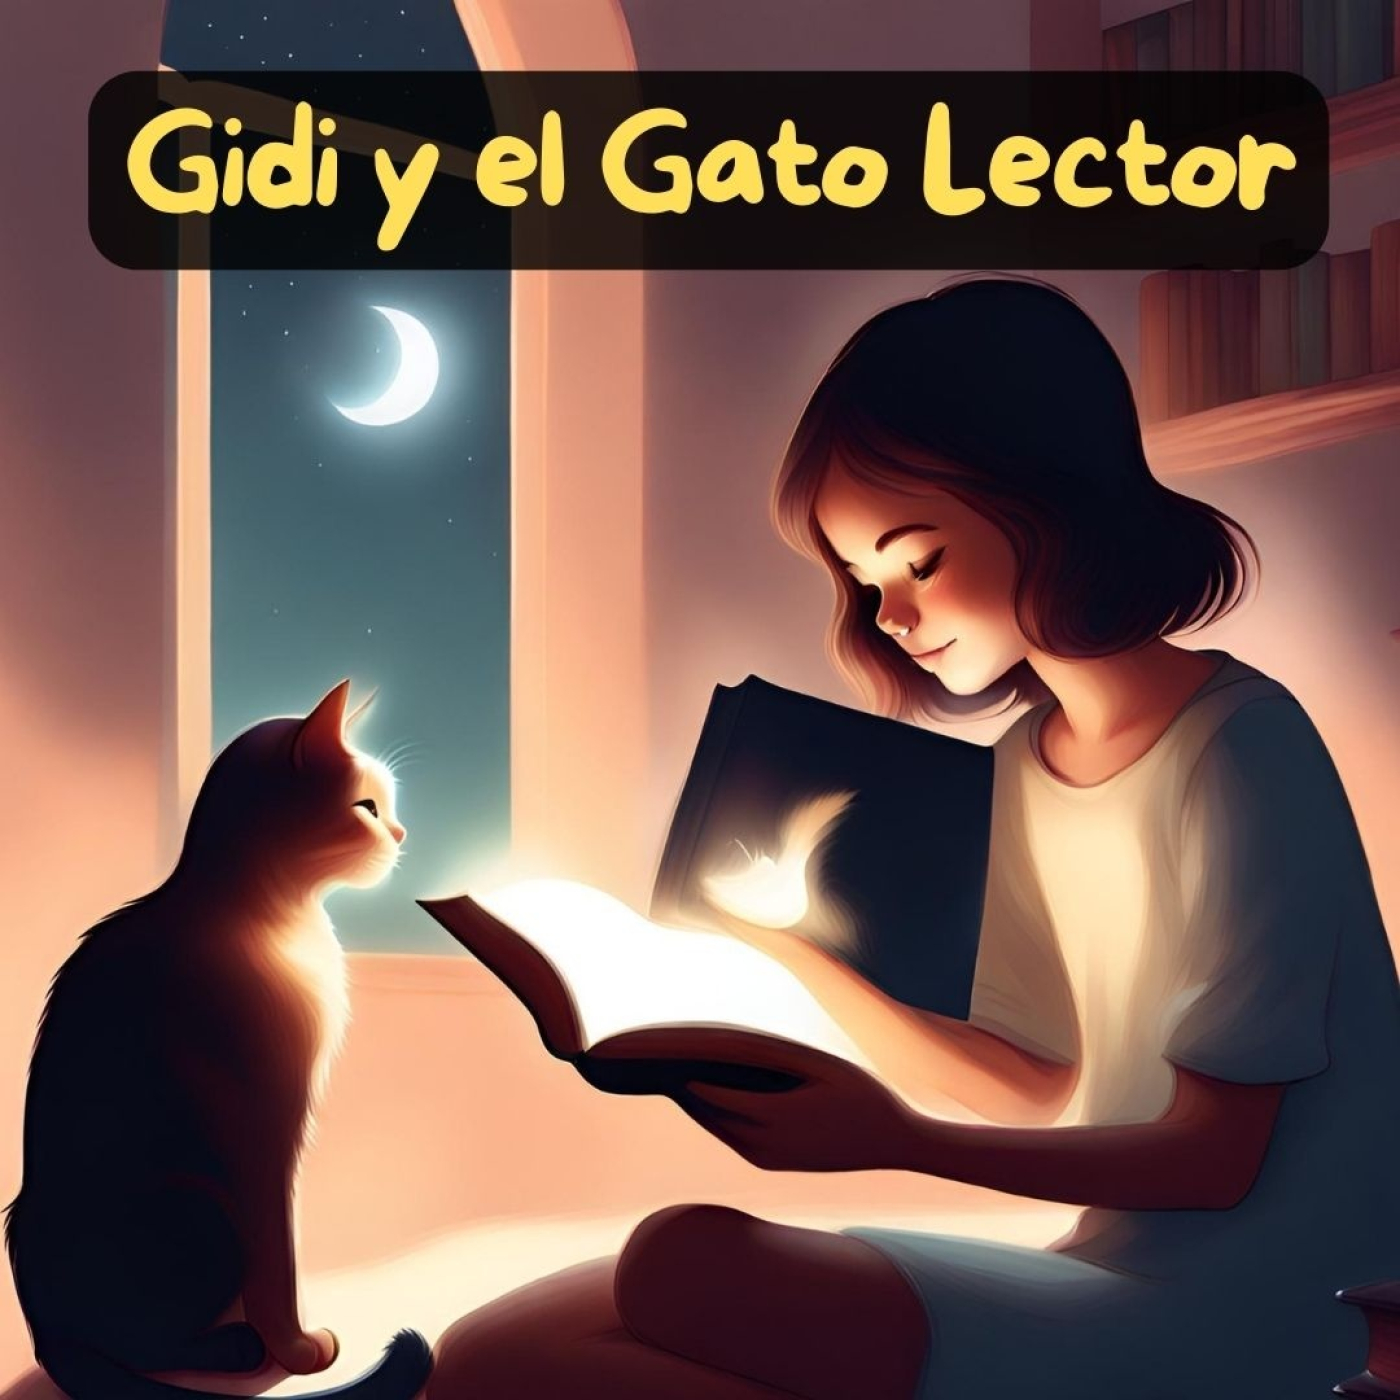 Gidi y el Gato Lector